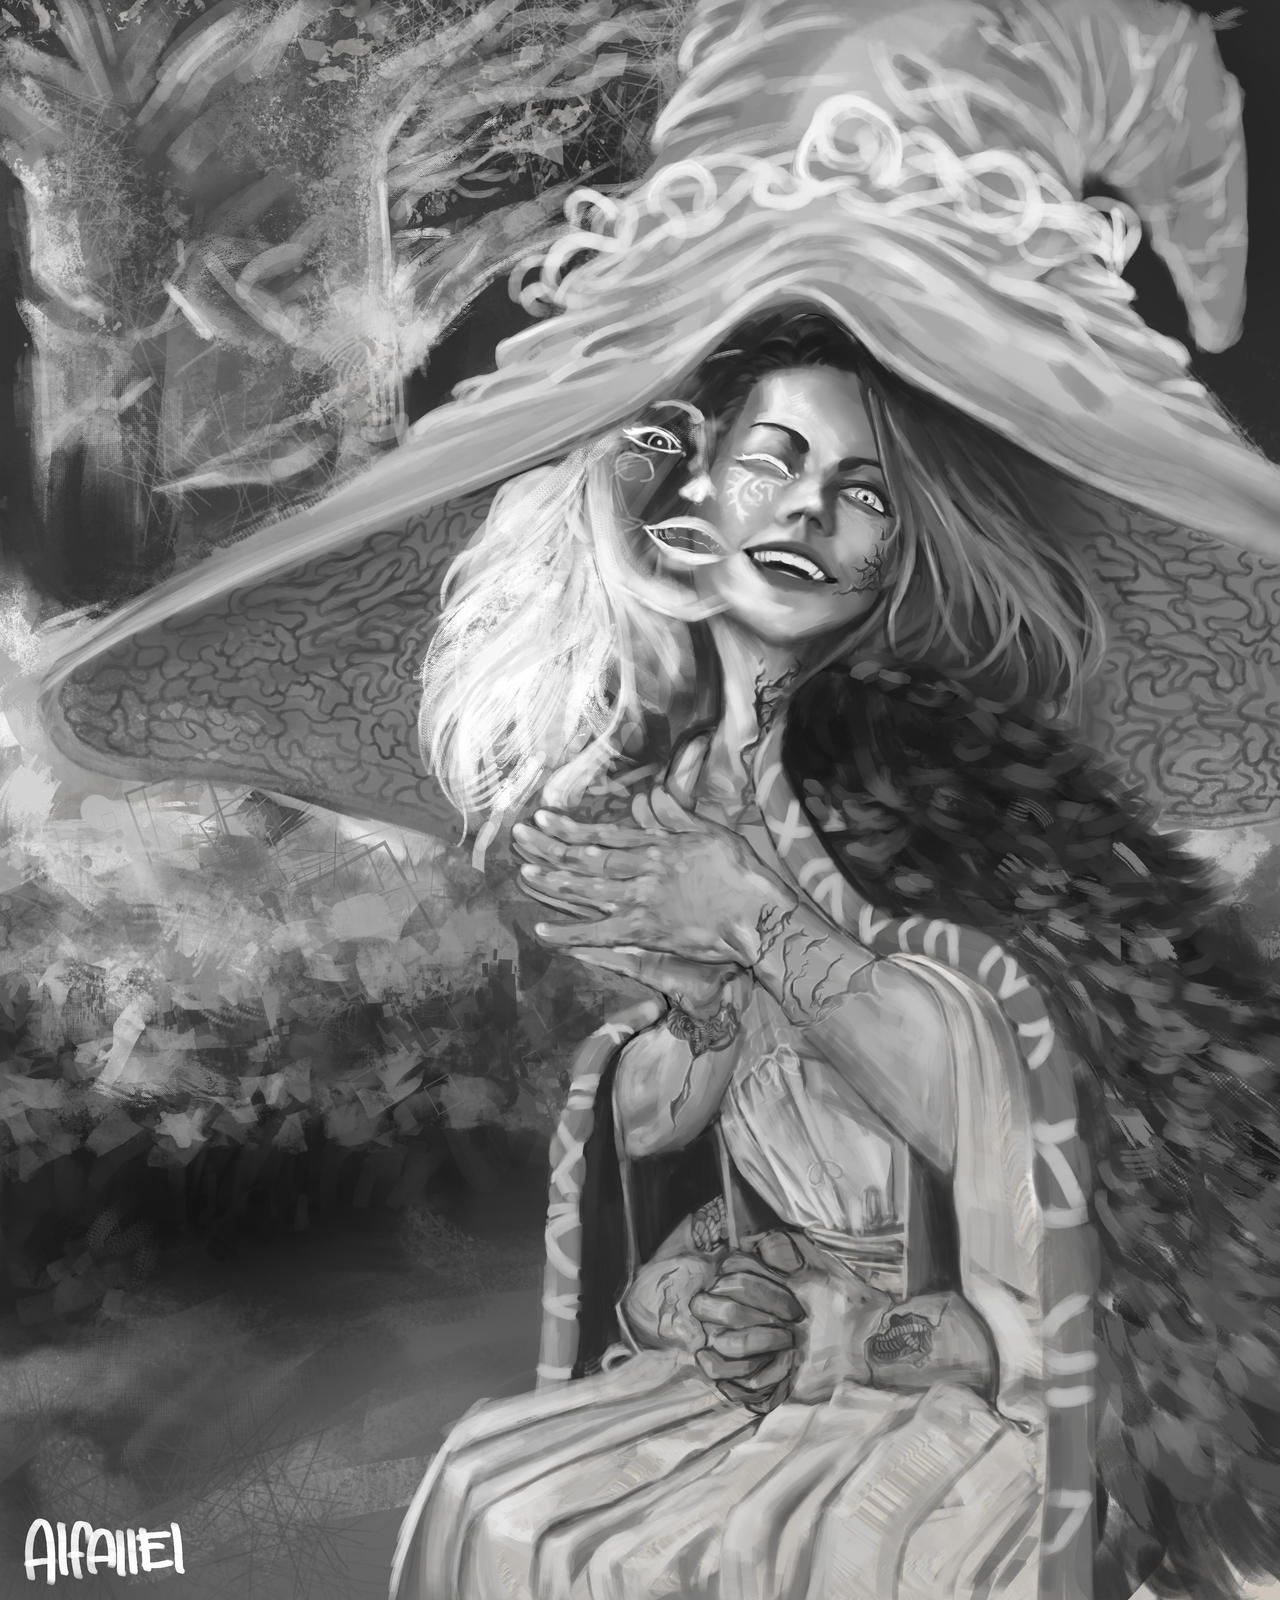 Ranni, The witch / Elden Ring Fan Art by Juan-J-De-La-Cruz on DeviantArt